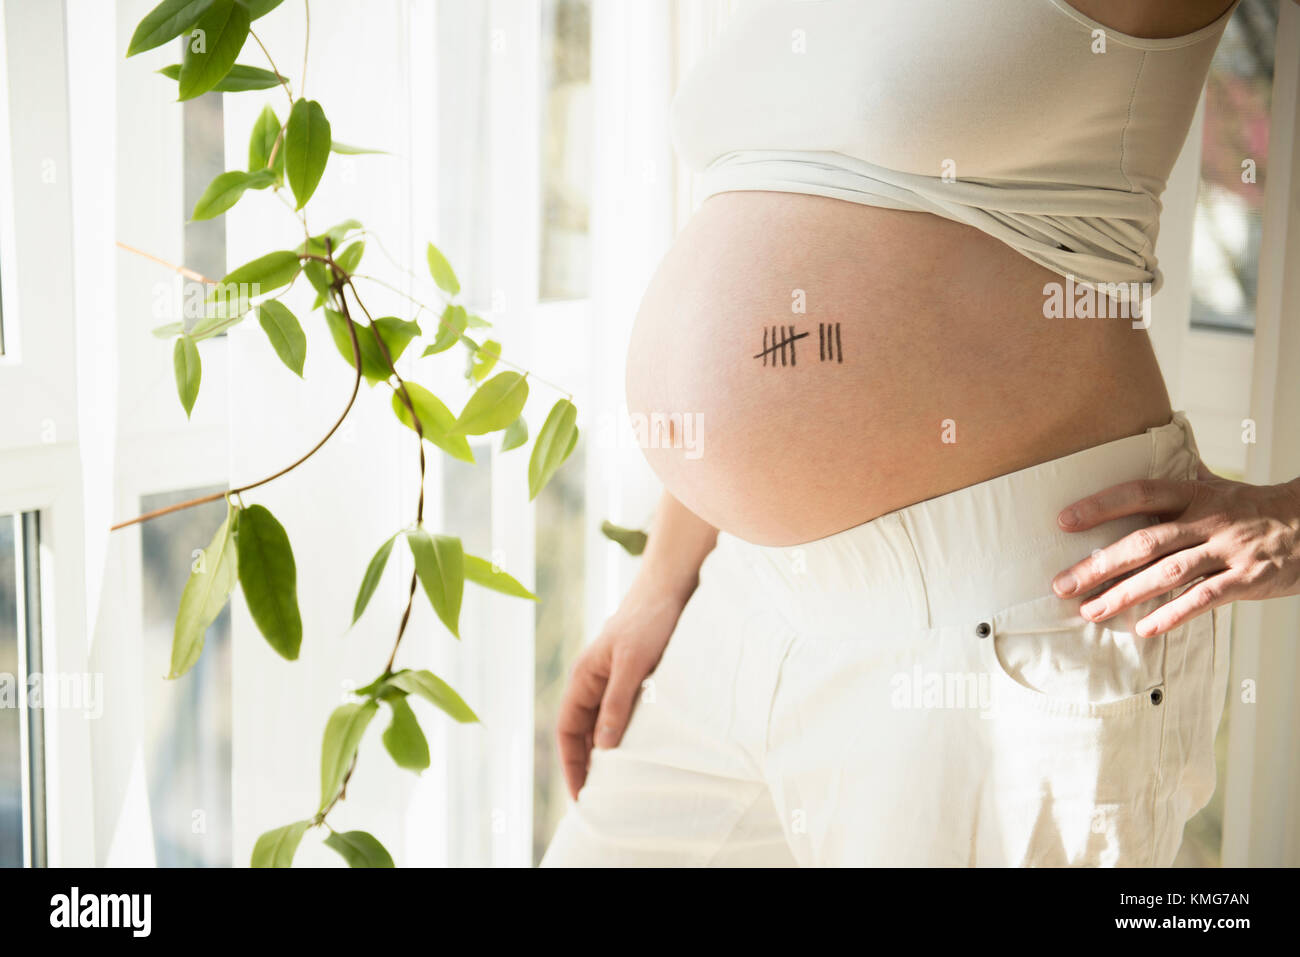 Donna incinta con il simbolo della carta tally sulla pancia Foto Stock